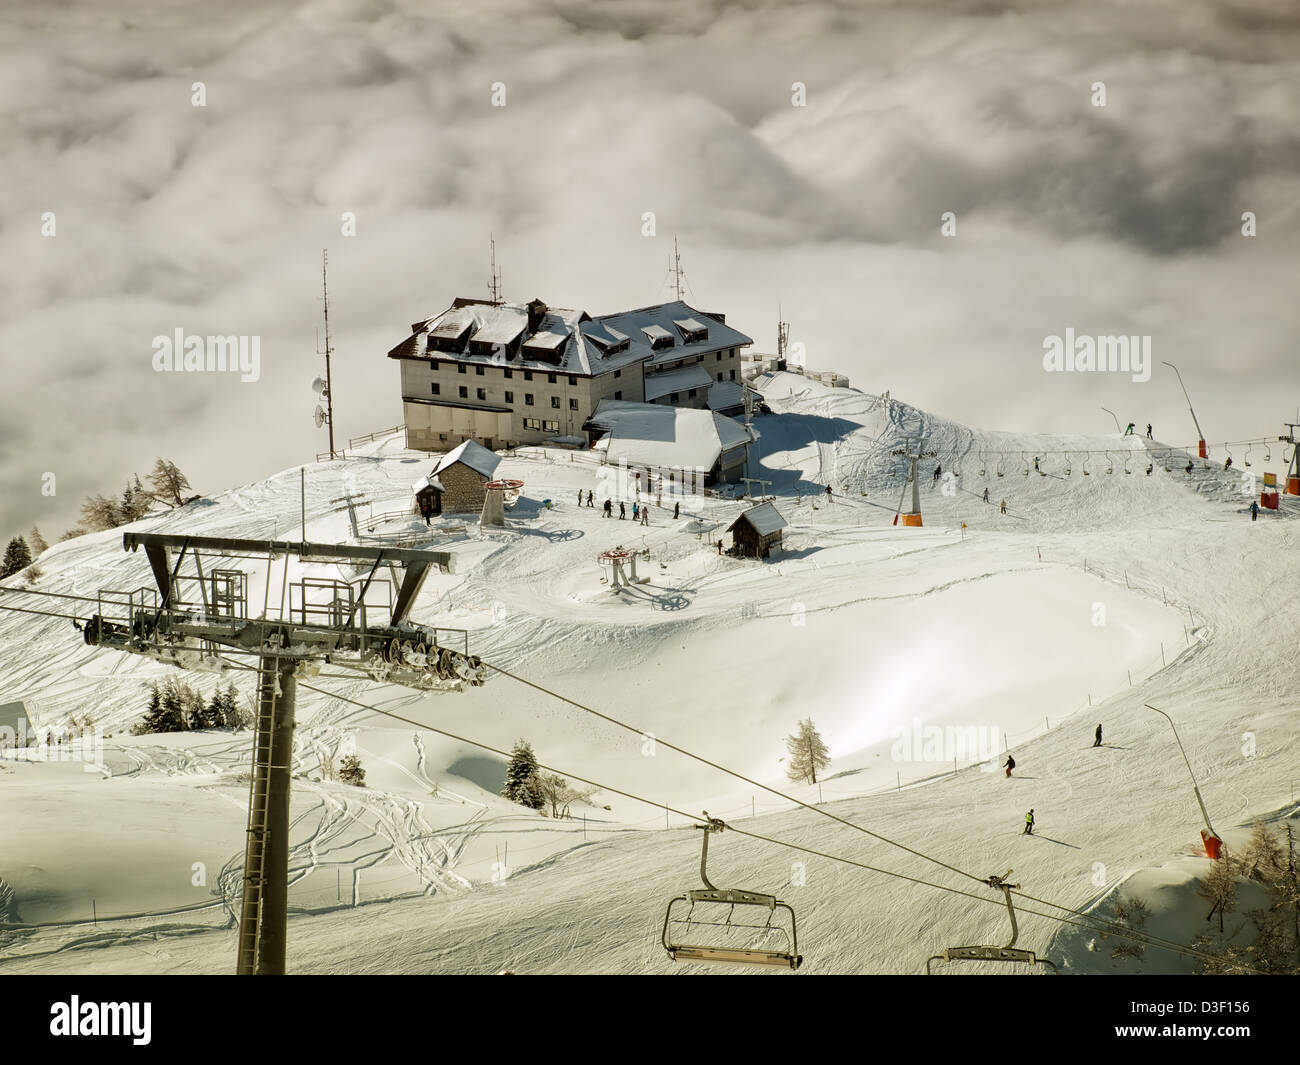 Malerische Aussicht auf ein modernes Skigebiet Krvavec in Slowenien genannt. Stockfoto